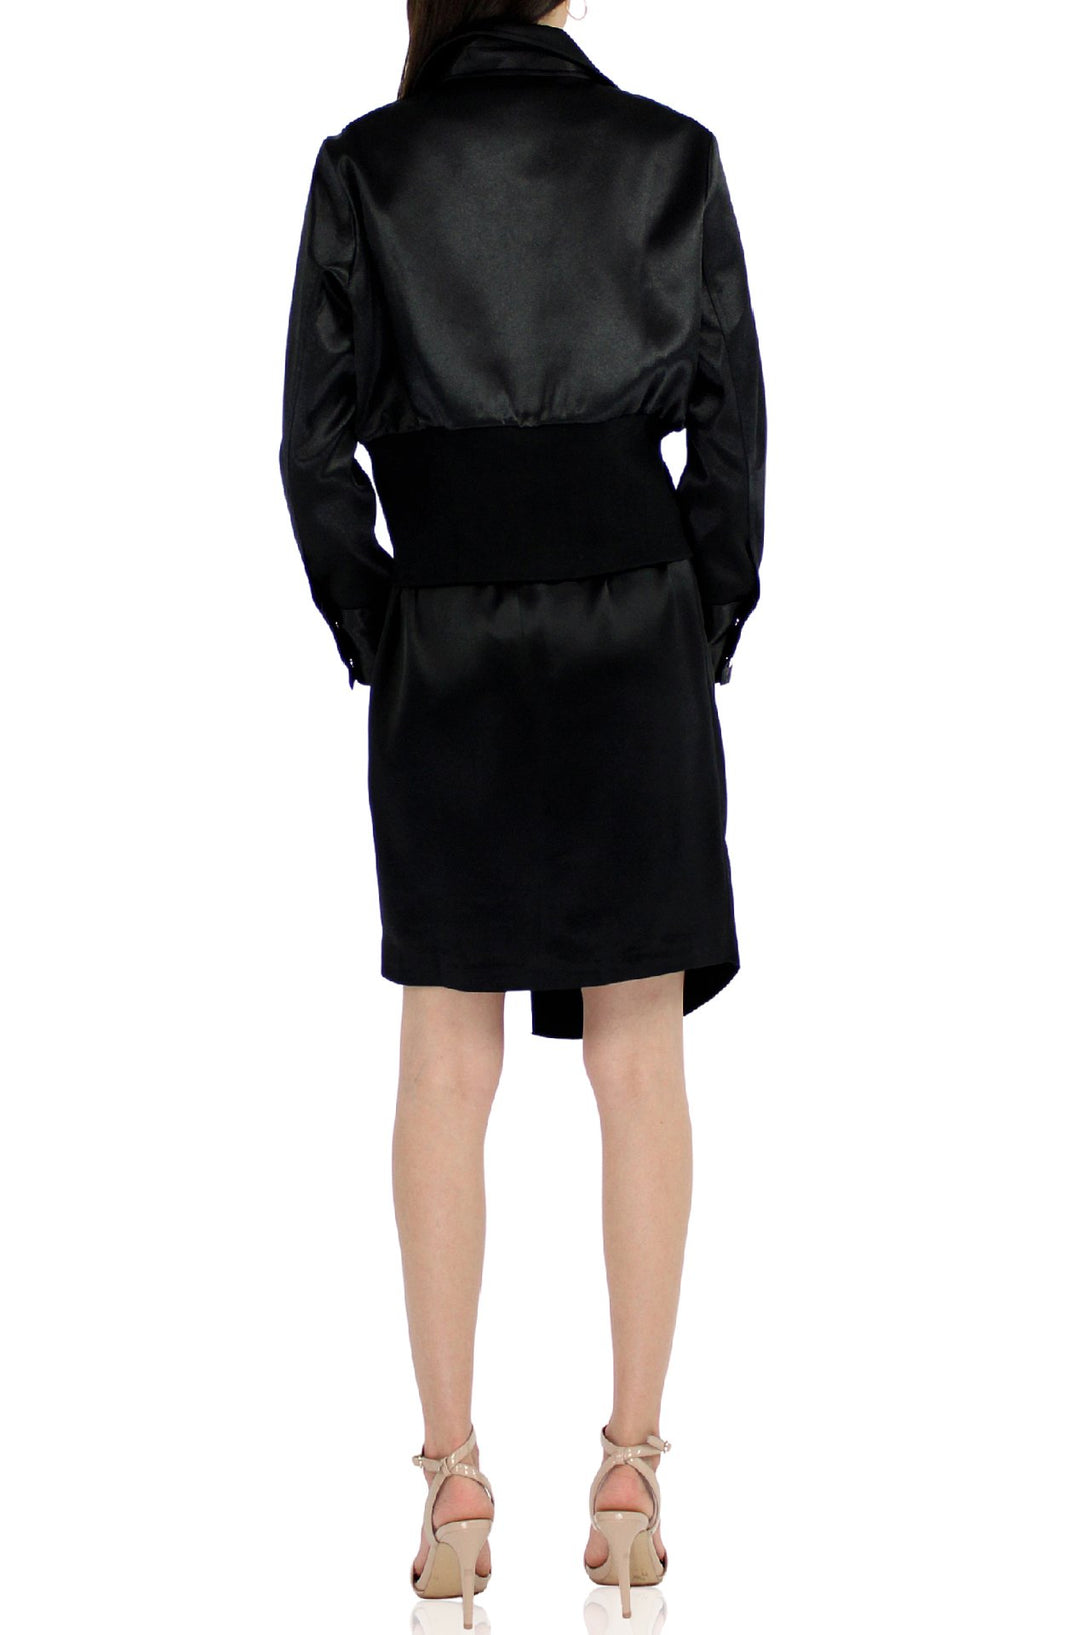 Designer-Black-Midi-Dress-For-Womens-By-Kyle-Richards